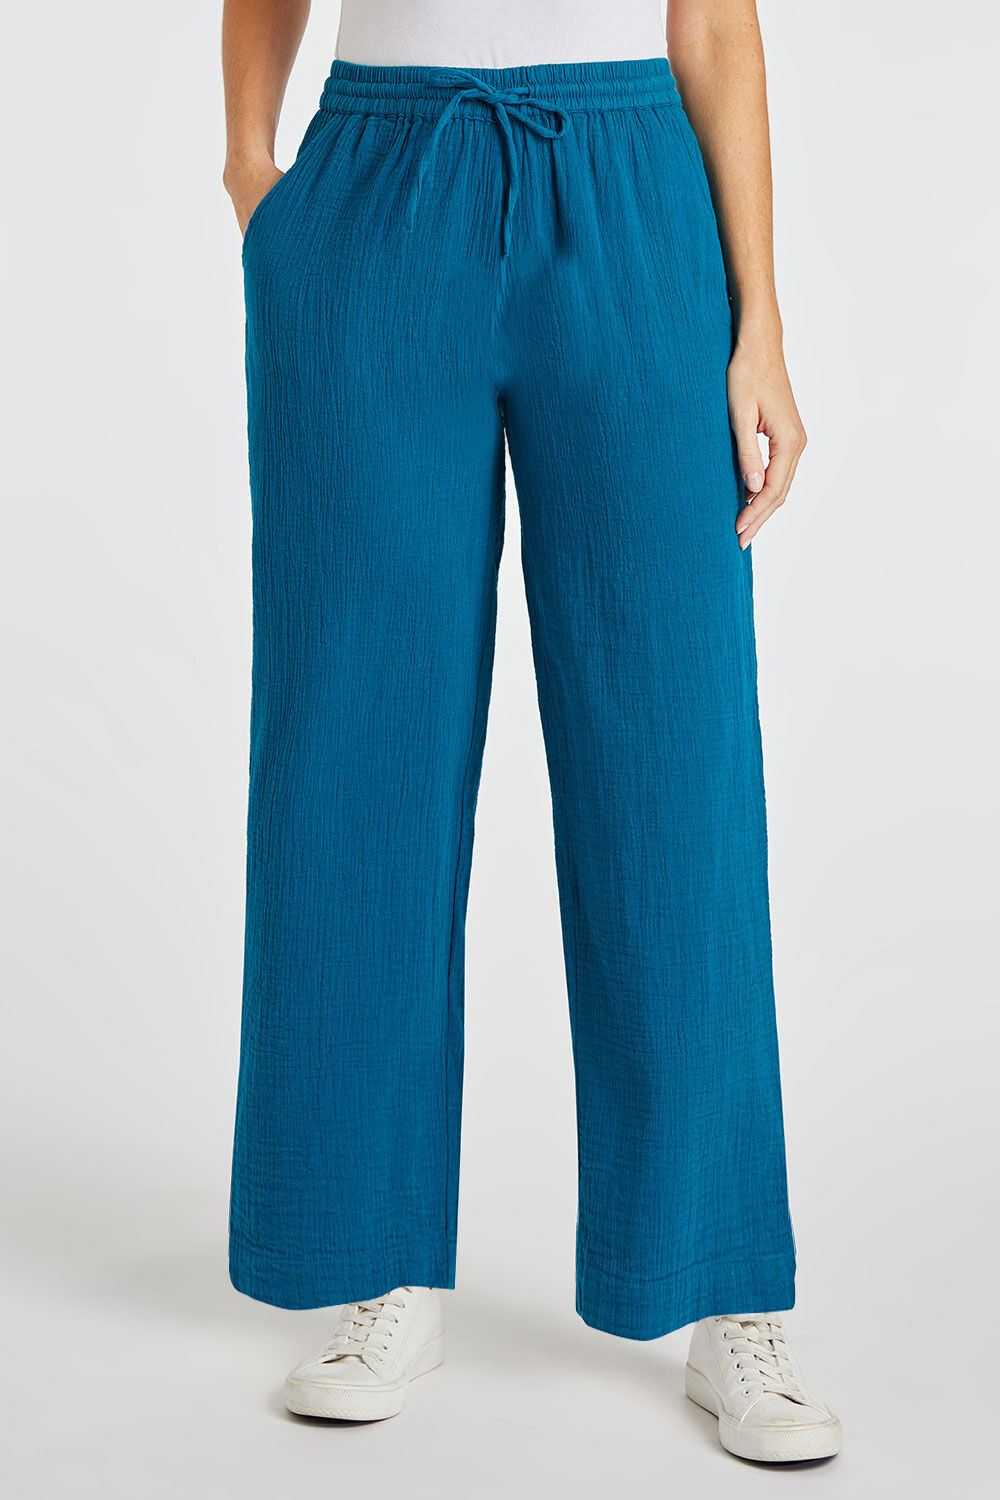 Bonmarche Blue Cotton Tie Waist Trousers With Pockets, Size: 12